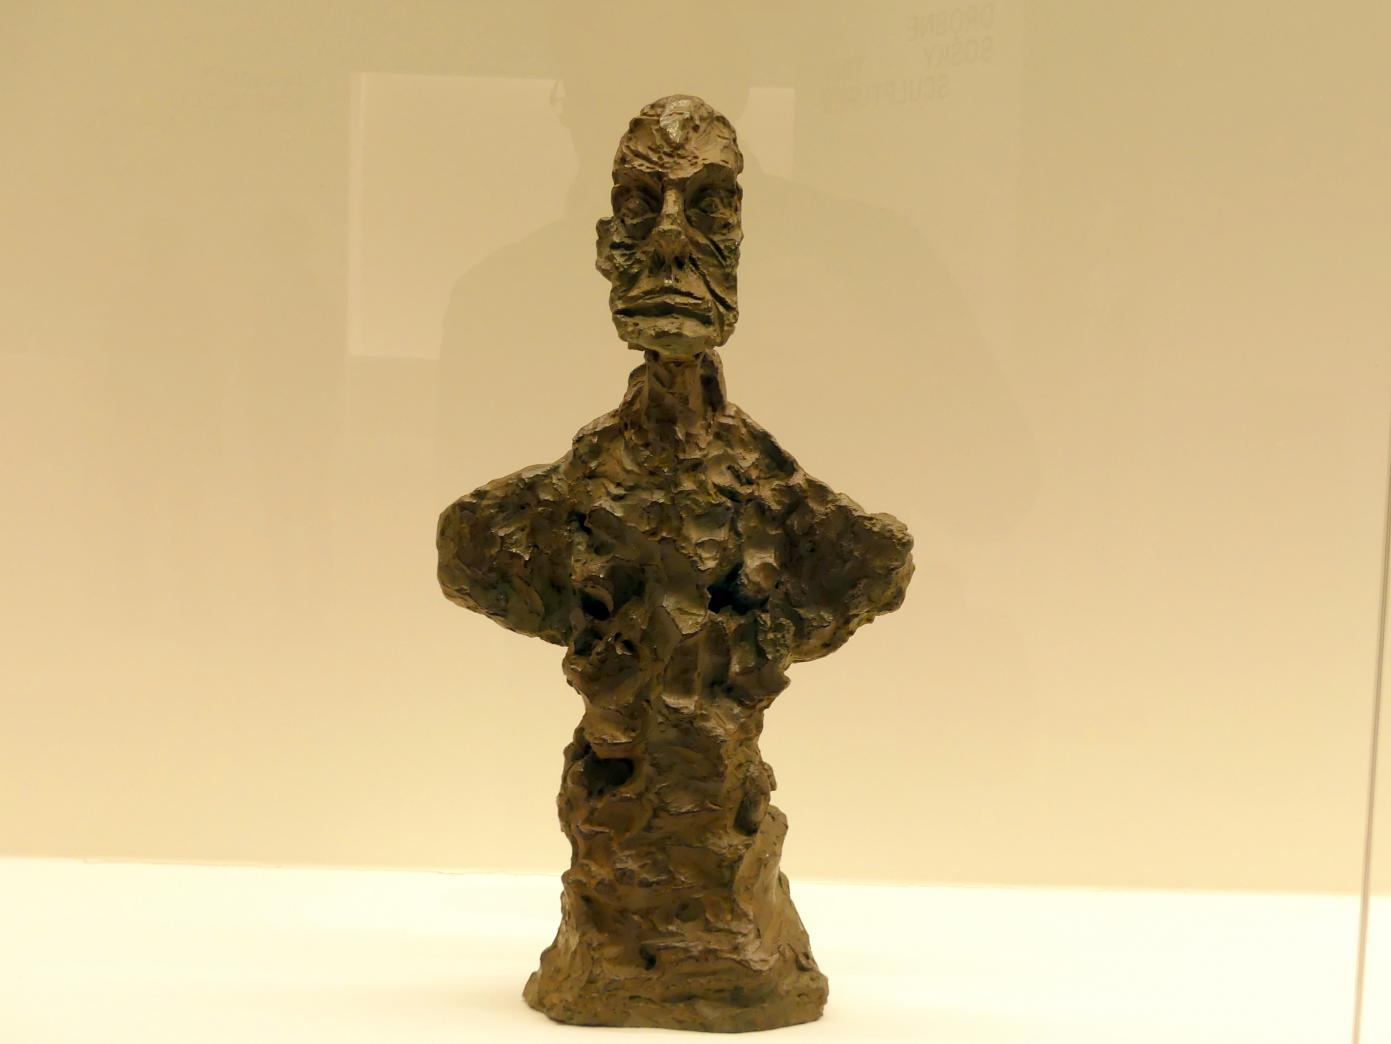 Alberto Giacometti (1914–1965), Büste eines Mannes ("New York II"), Prag, Nationalgalerie im Messepalast, Ausstellung "Alberto Giacometti" vom 18.07.-01.12.2019, Kleine Skulpturen, 1965, Bild 1/3